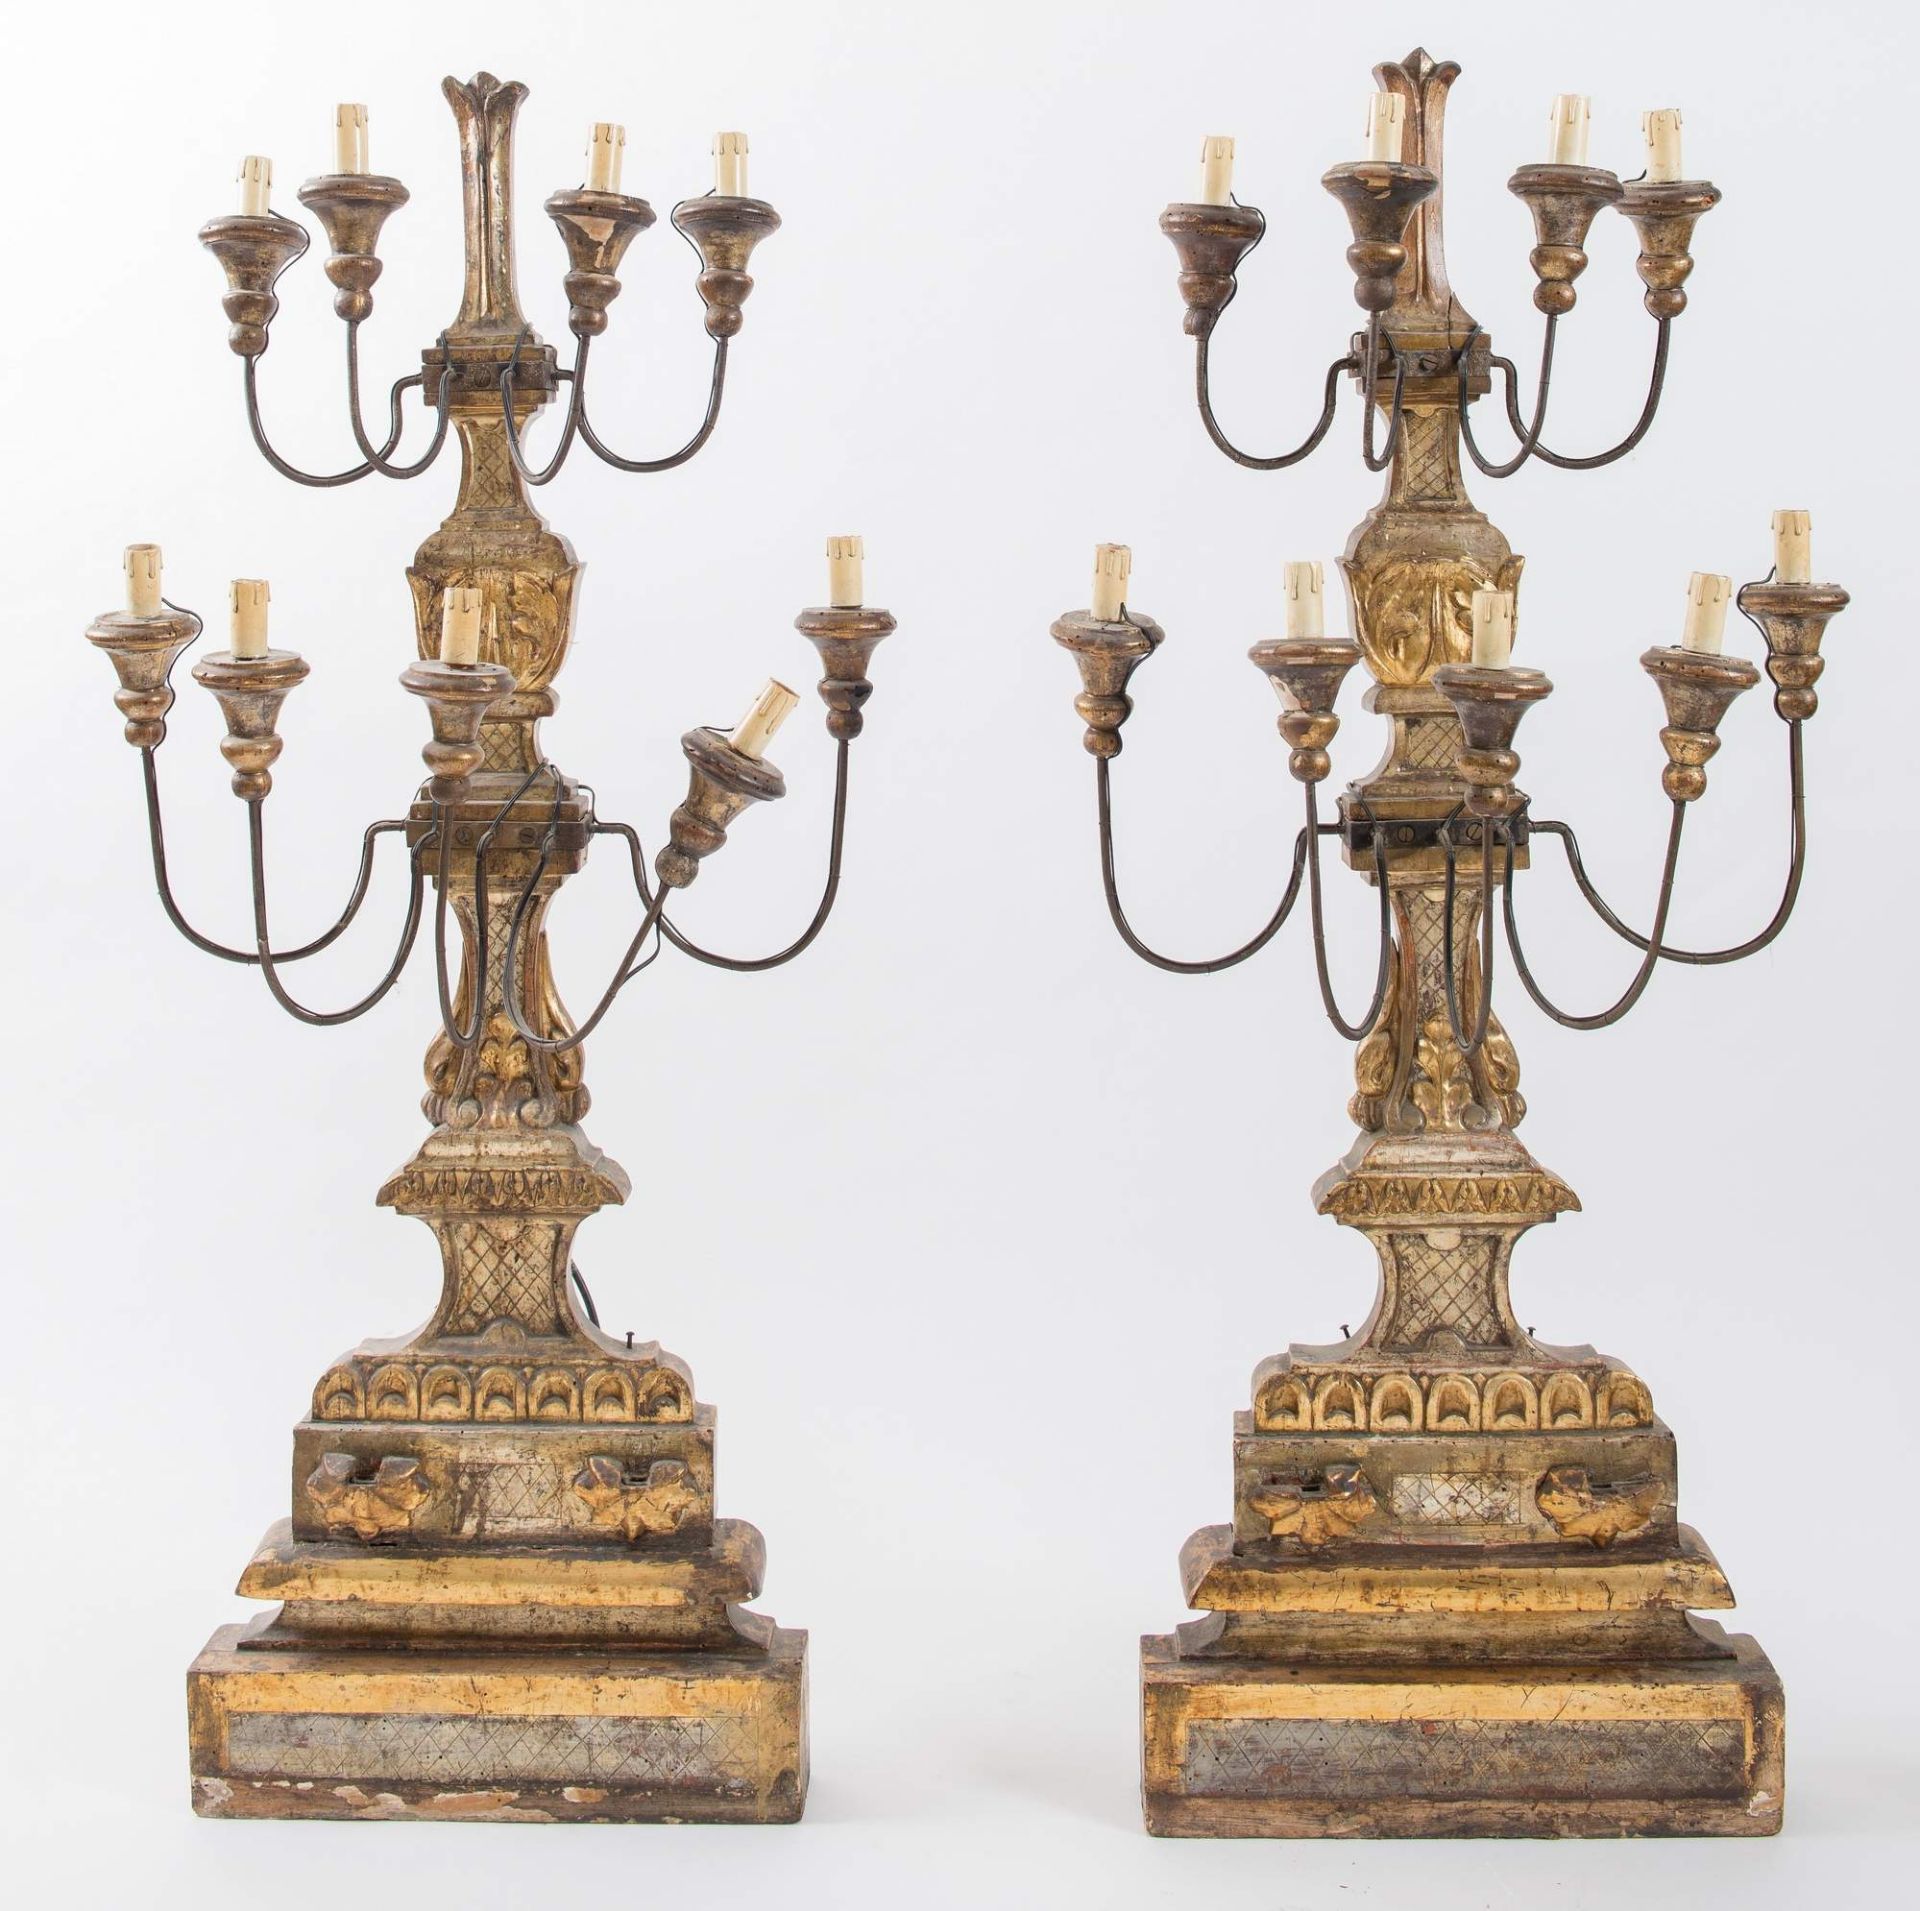 Coppia di grandi candelabri in legno intagliato e dorato. Toscana, ultimo quarto del XVIII secolo. - Bild 2 aus 3